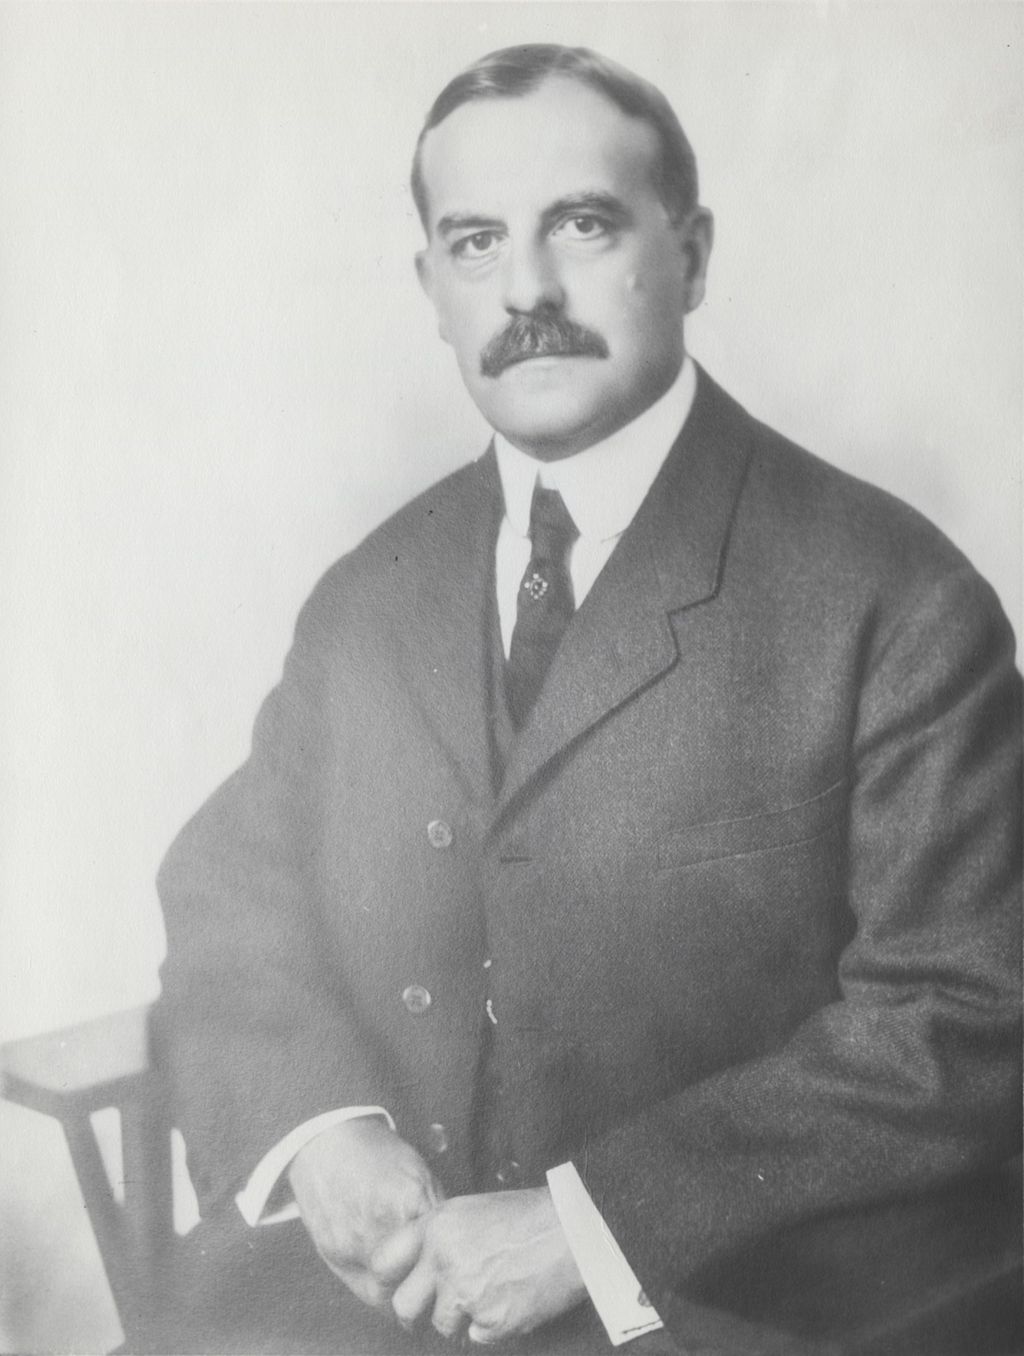 Photo portrait of Joseph T. Bowen, namesake of Joseph T. Bowen Country Club